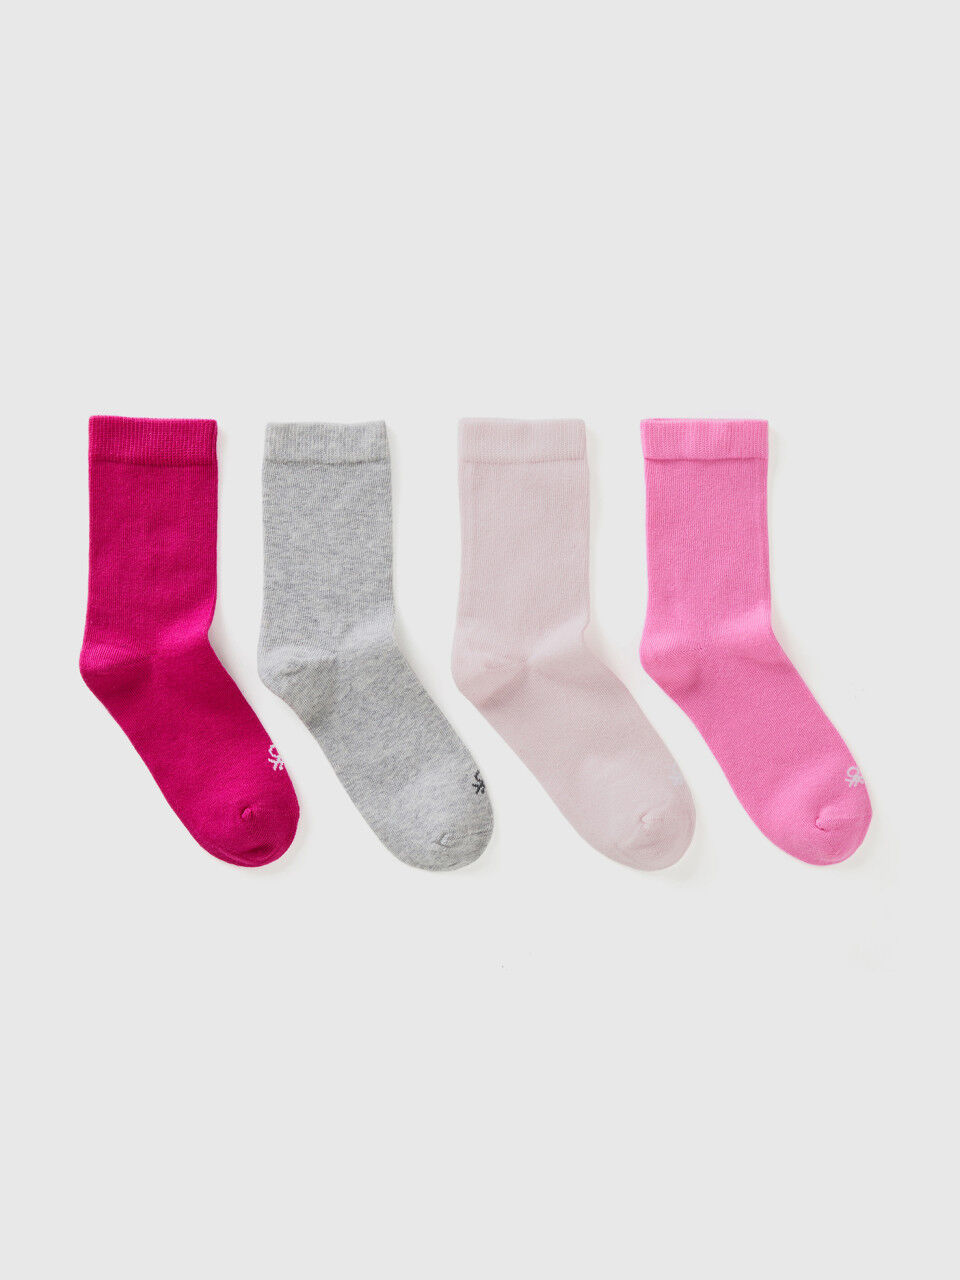 Quatro pares de meias em algodão orgânico stretch